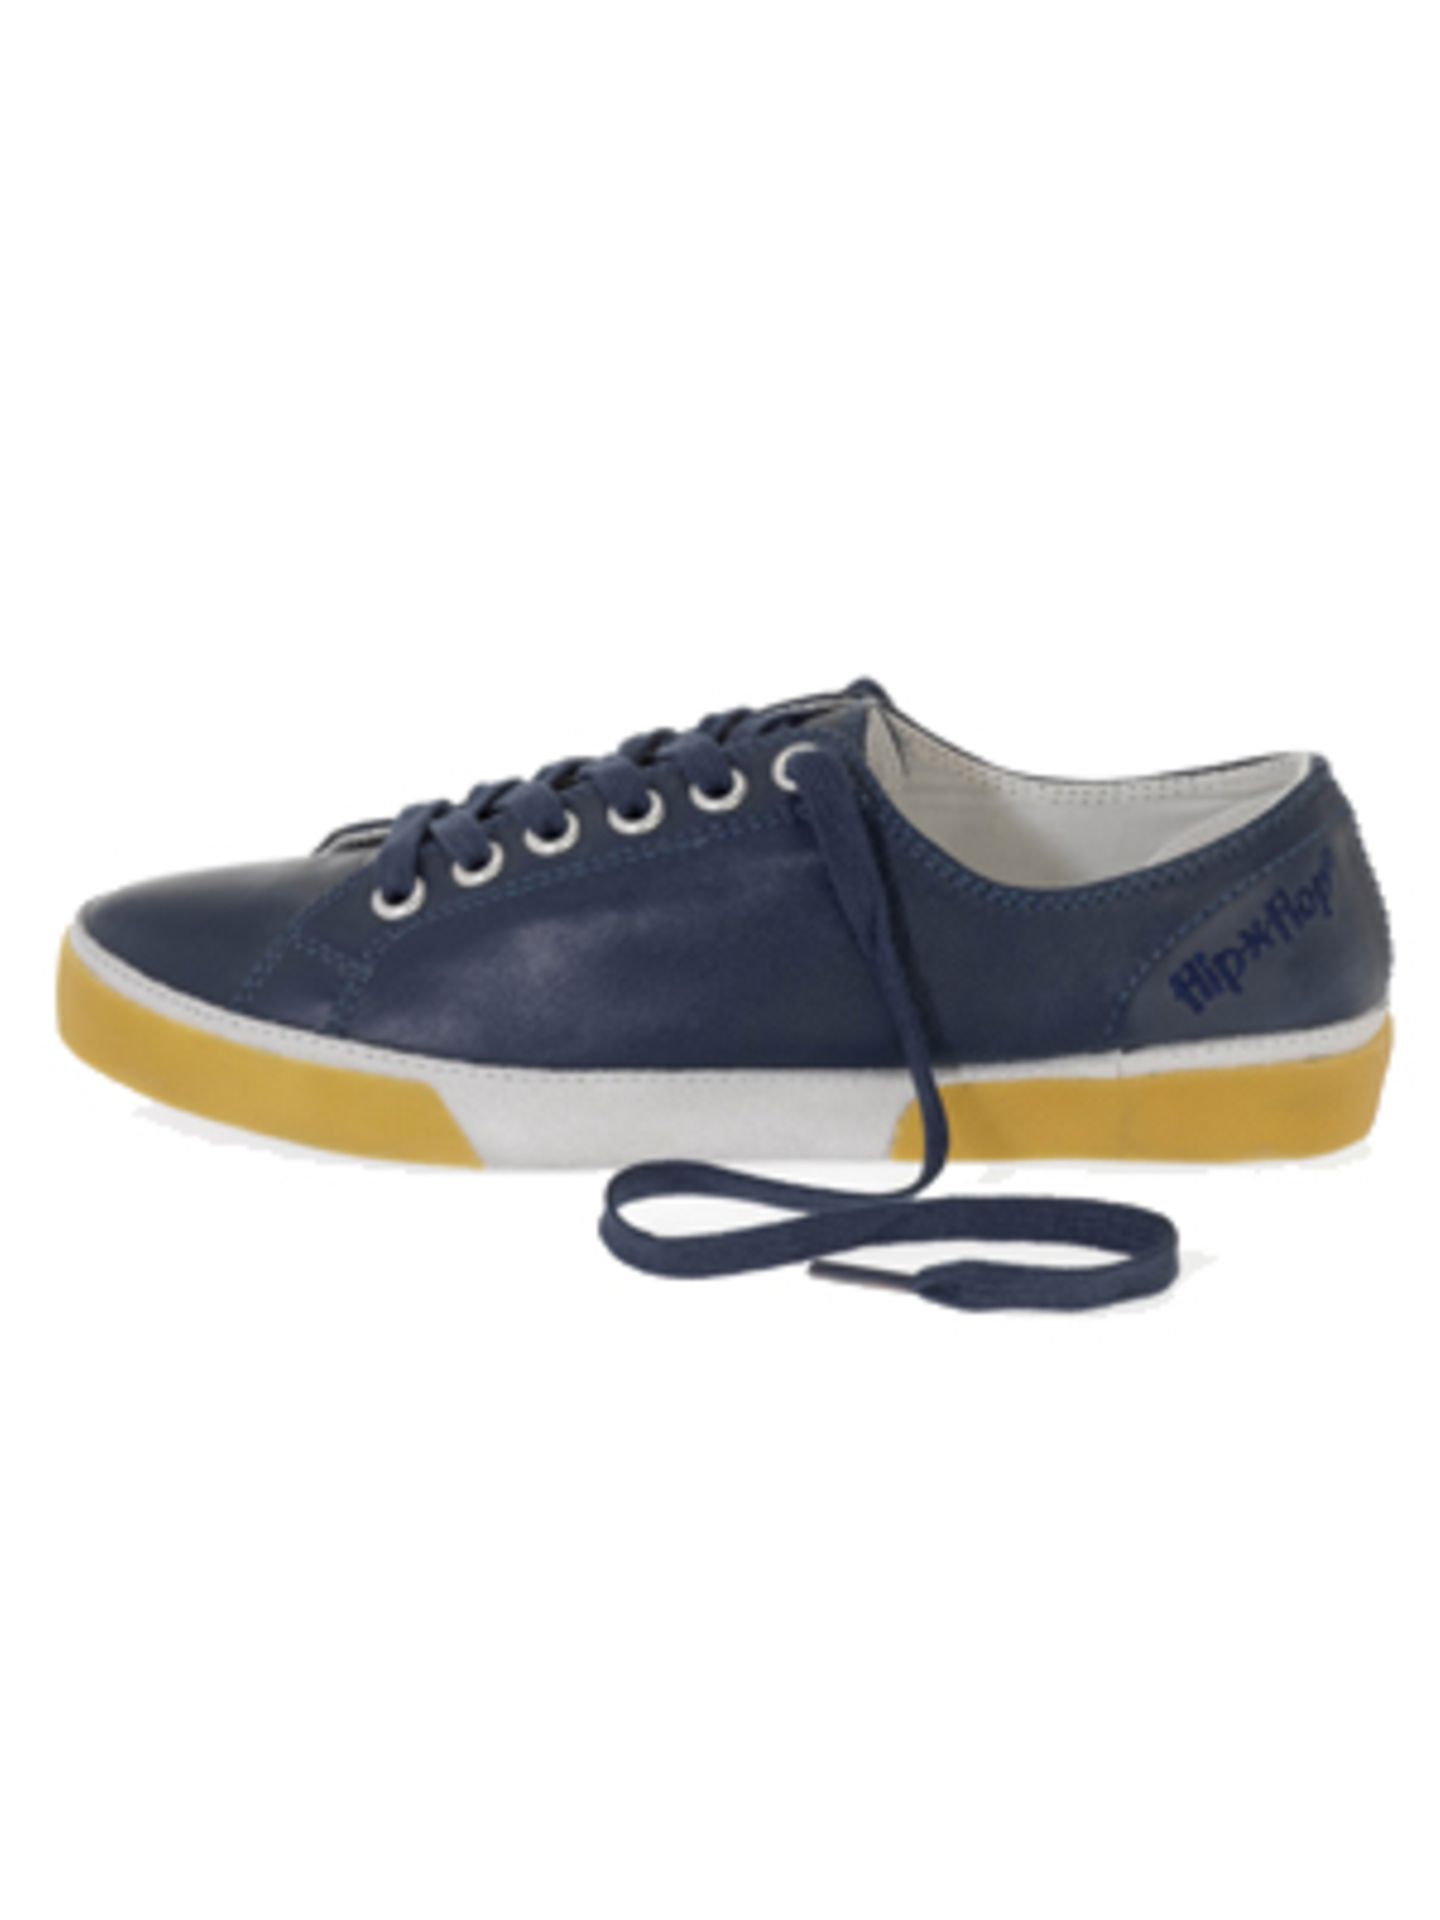 Oldschool-Sneaker in College-Blau von flip flop, um 99,95 Euro.